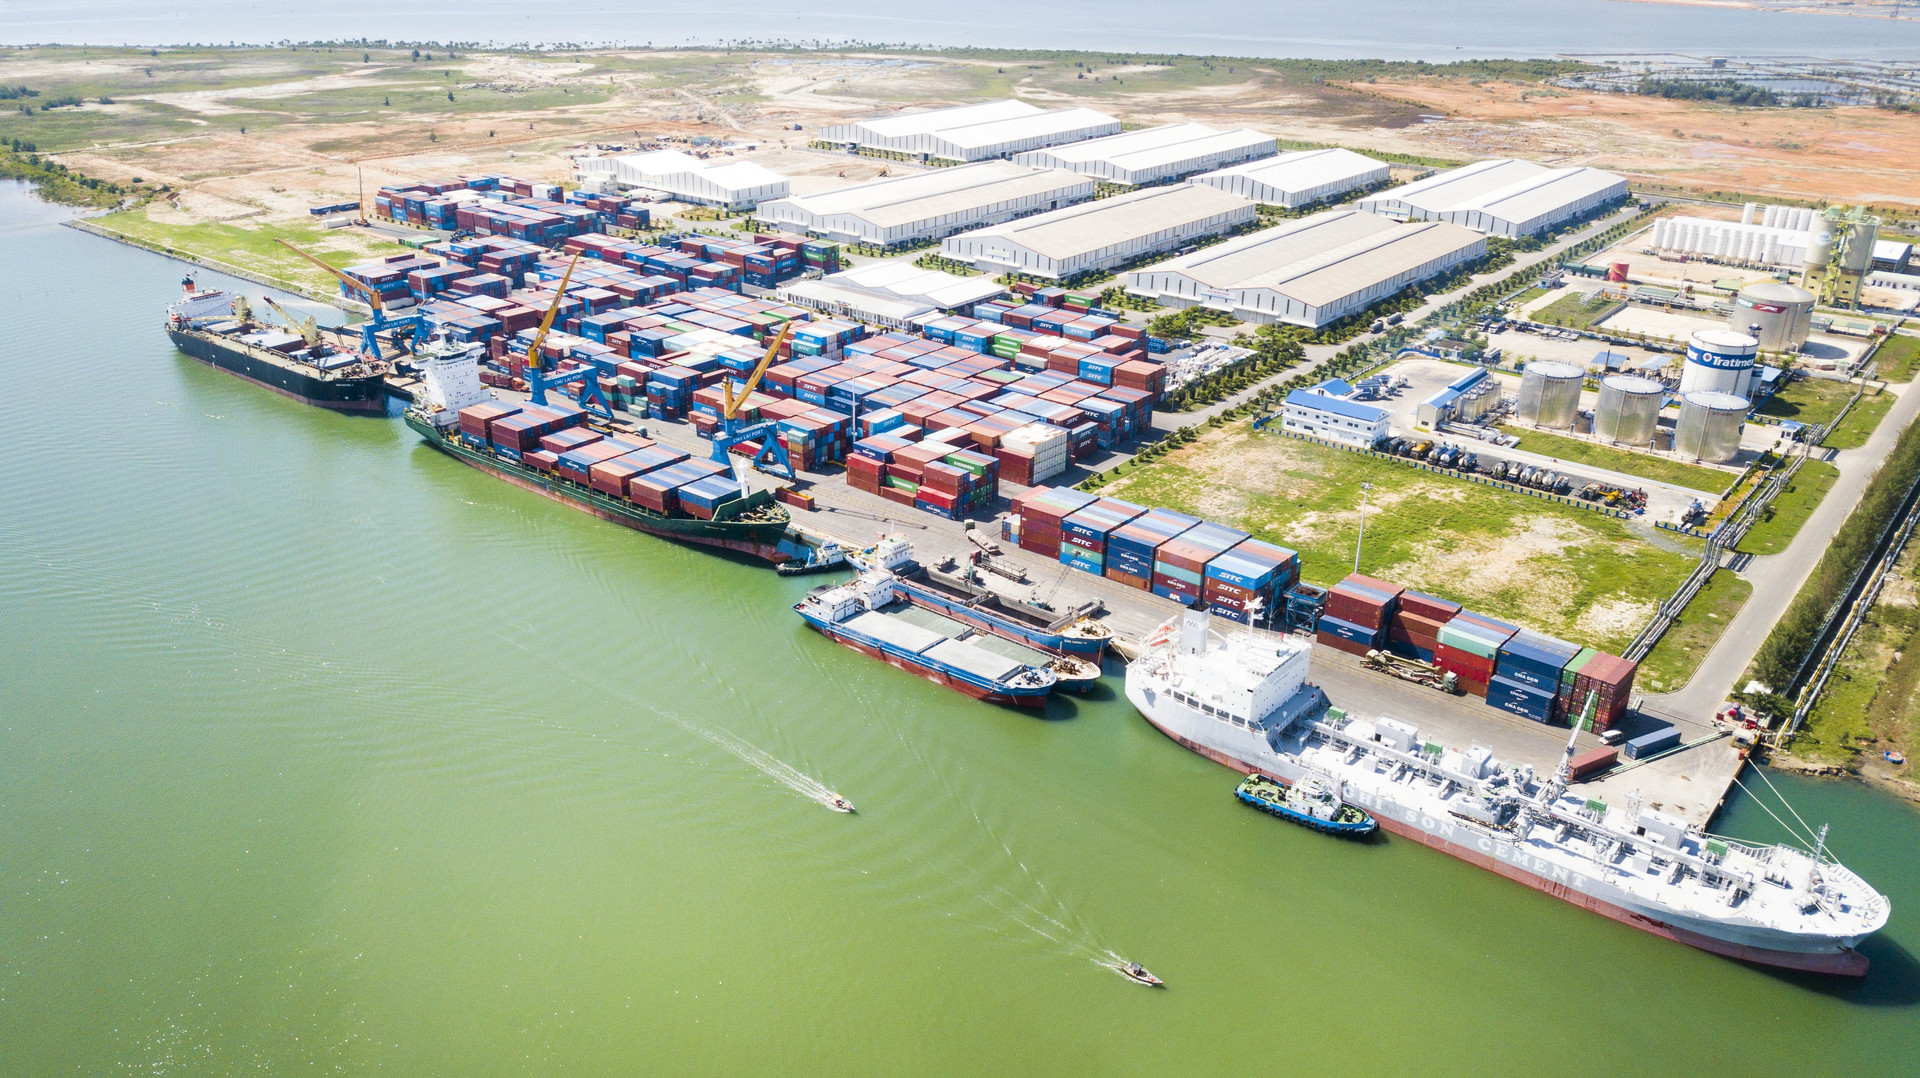  Cảng Chu Lai có vị trí địa lý thuận lợi, kết nối với các khu vực công nghiệp và các vùng, miền